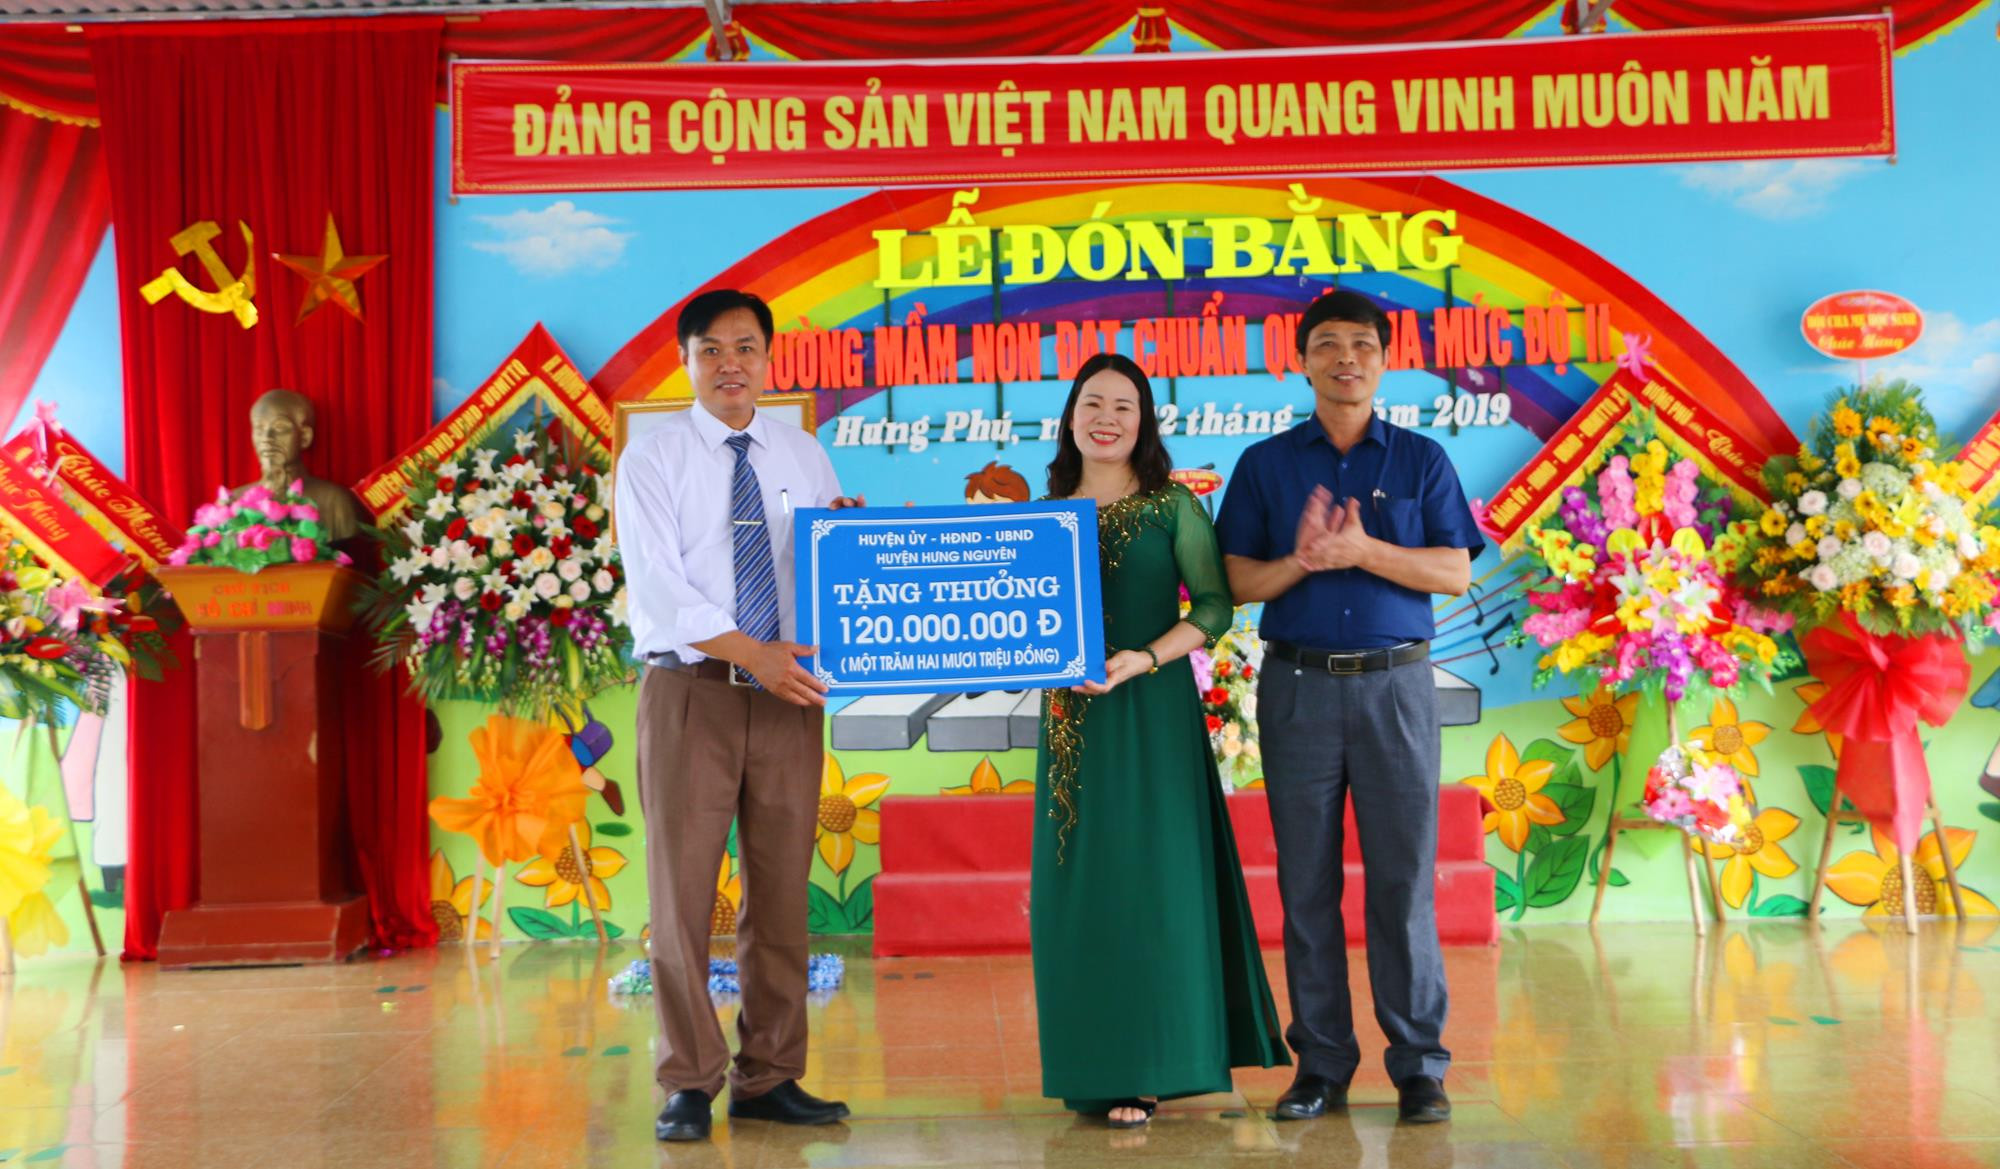 Trao phần thưởng 120 triệu đồng cho xã Hưng Phú về thành tích đưa Trường mầm non xã đạt chuẩn Quốc gia mức độ 2. Ảnh: Nguyễn Hải